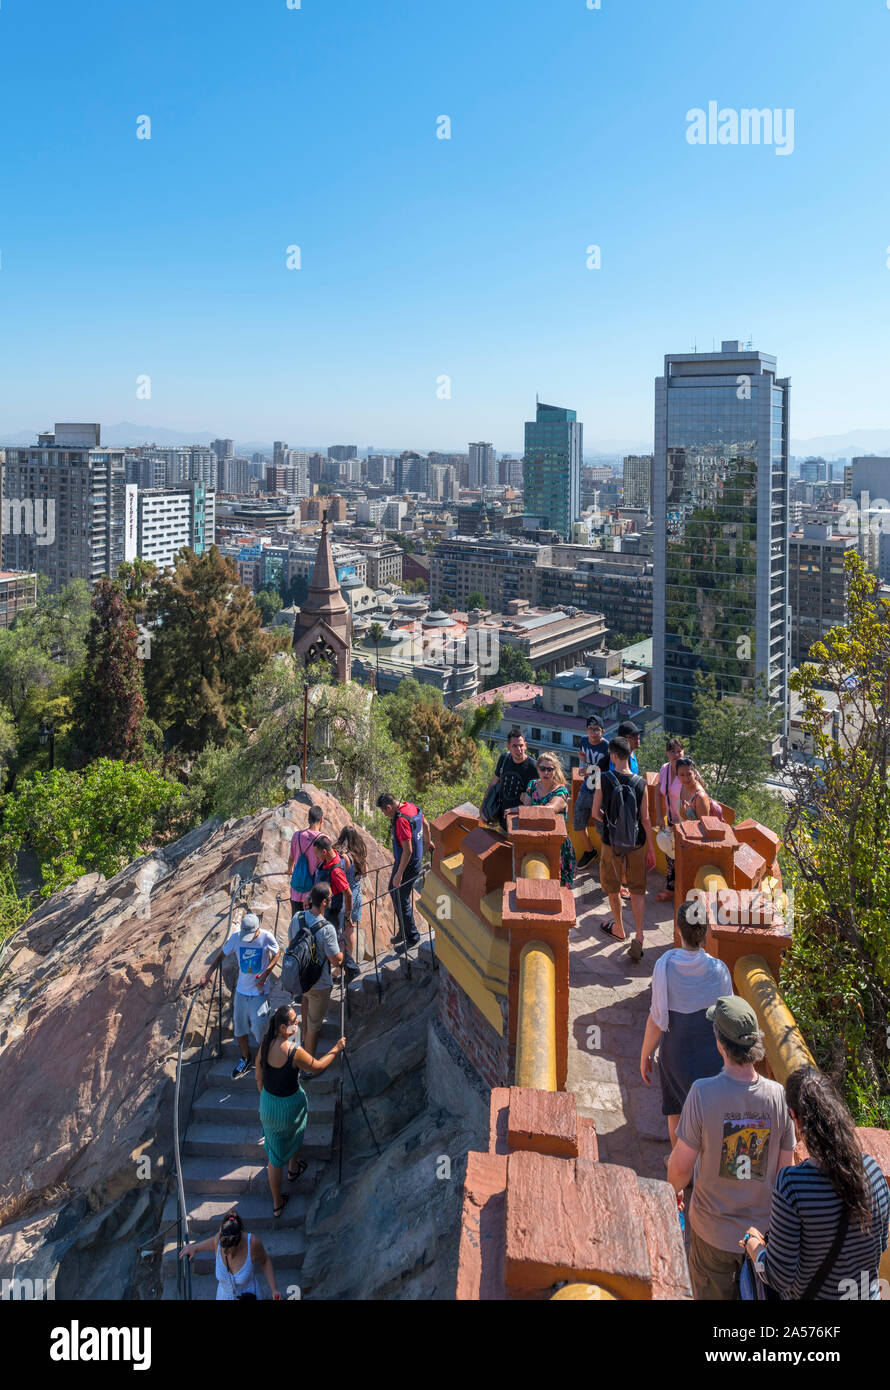 Blick über die Stadt vom Torre Aussichtspunkt auf dem Gipfel des Cerro Santa Lucía (Santa Lucia Hill), Barrio Bellavista, Santiago, Chile, Südamerika Stockfoto